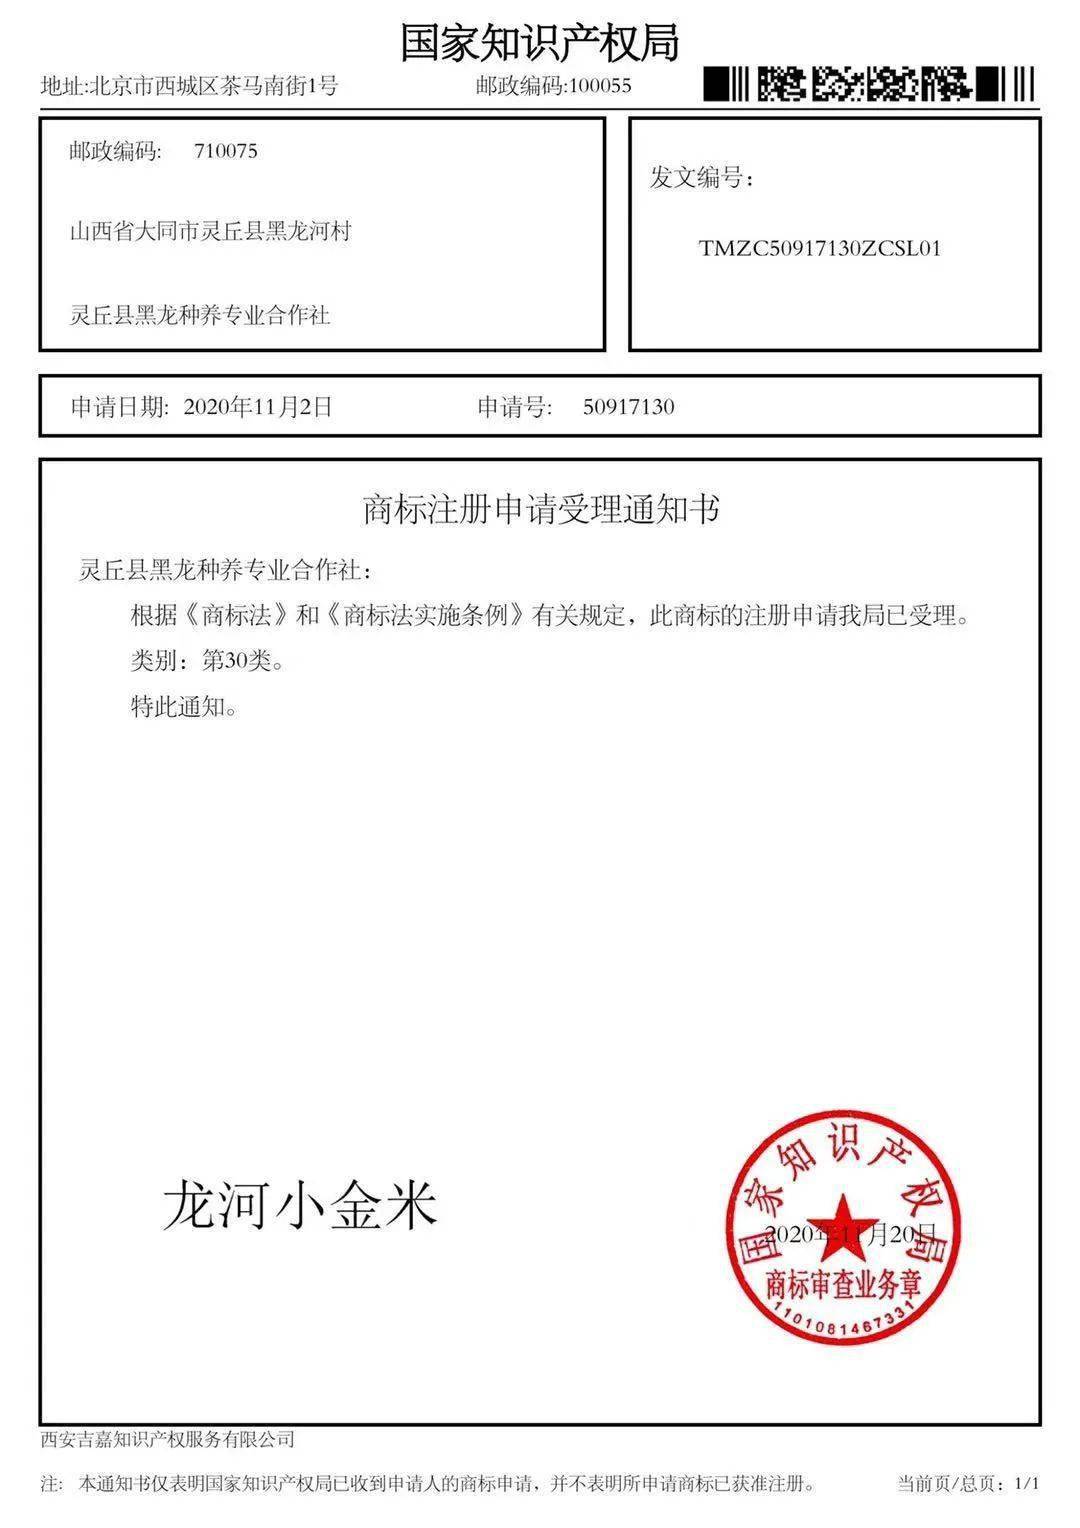 龙河小金米获得国家知识产权局颁发的注册商标证书